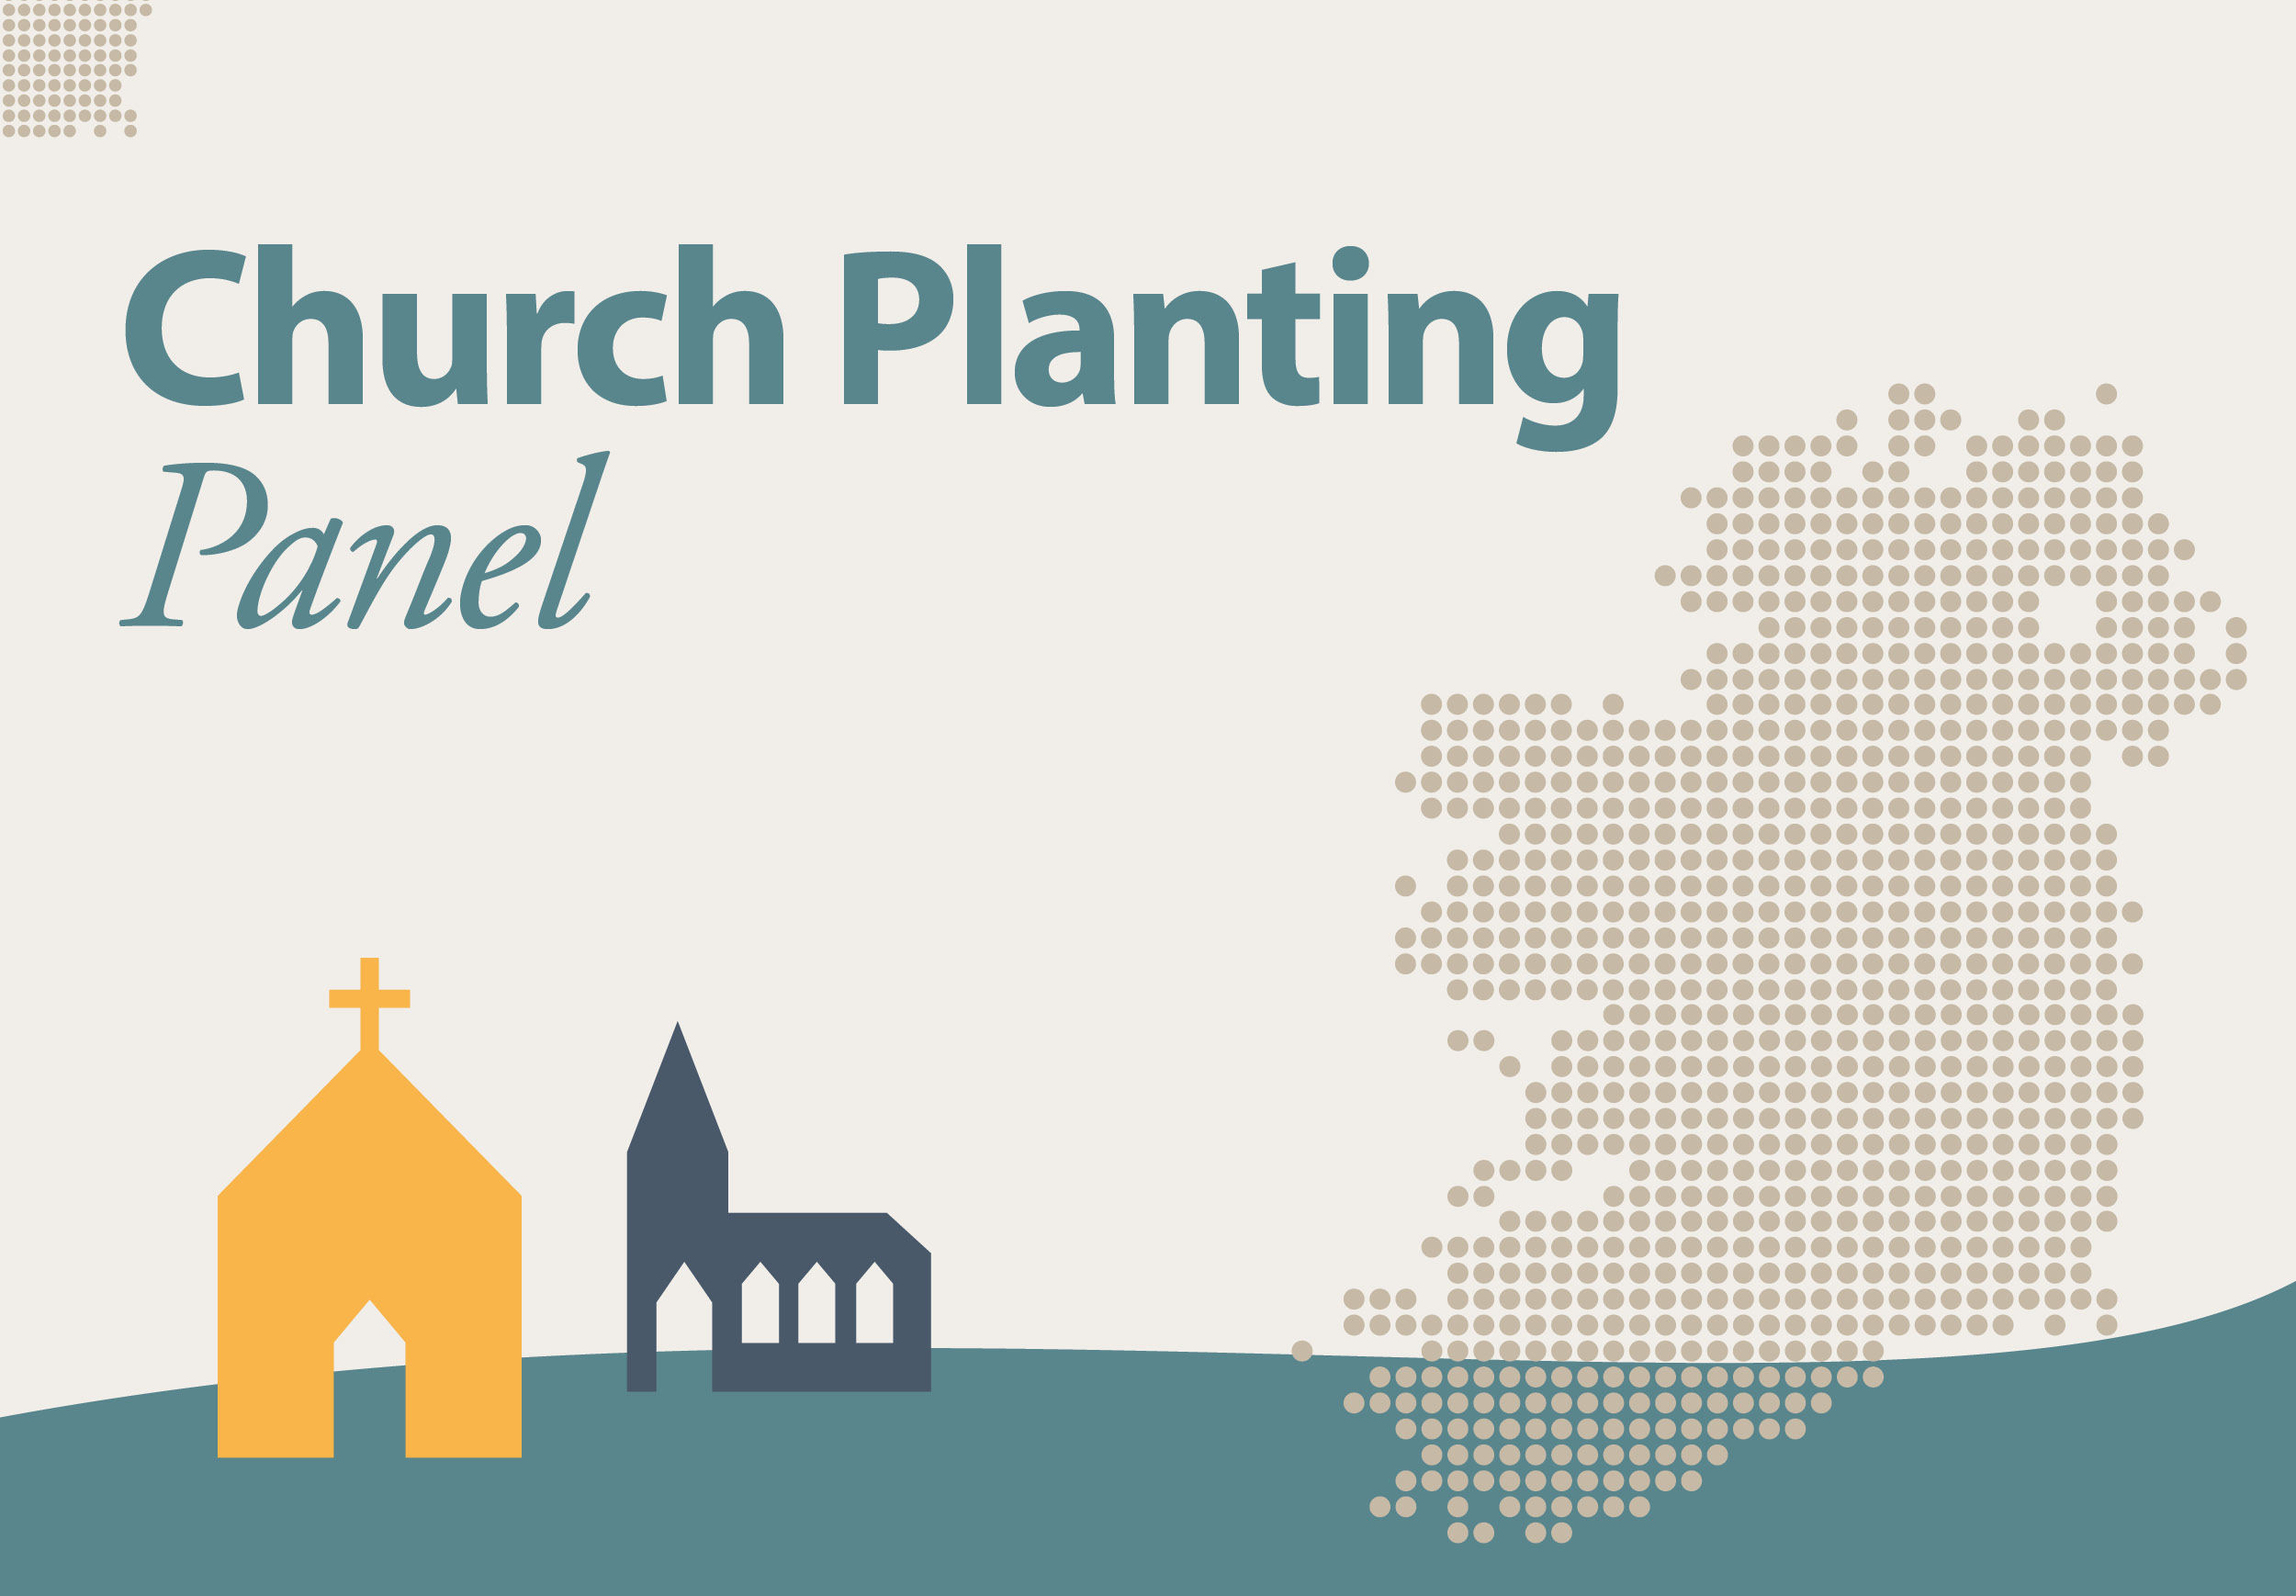 Church planting